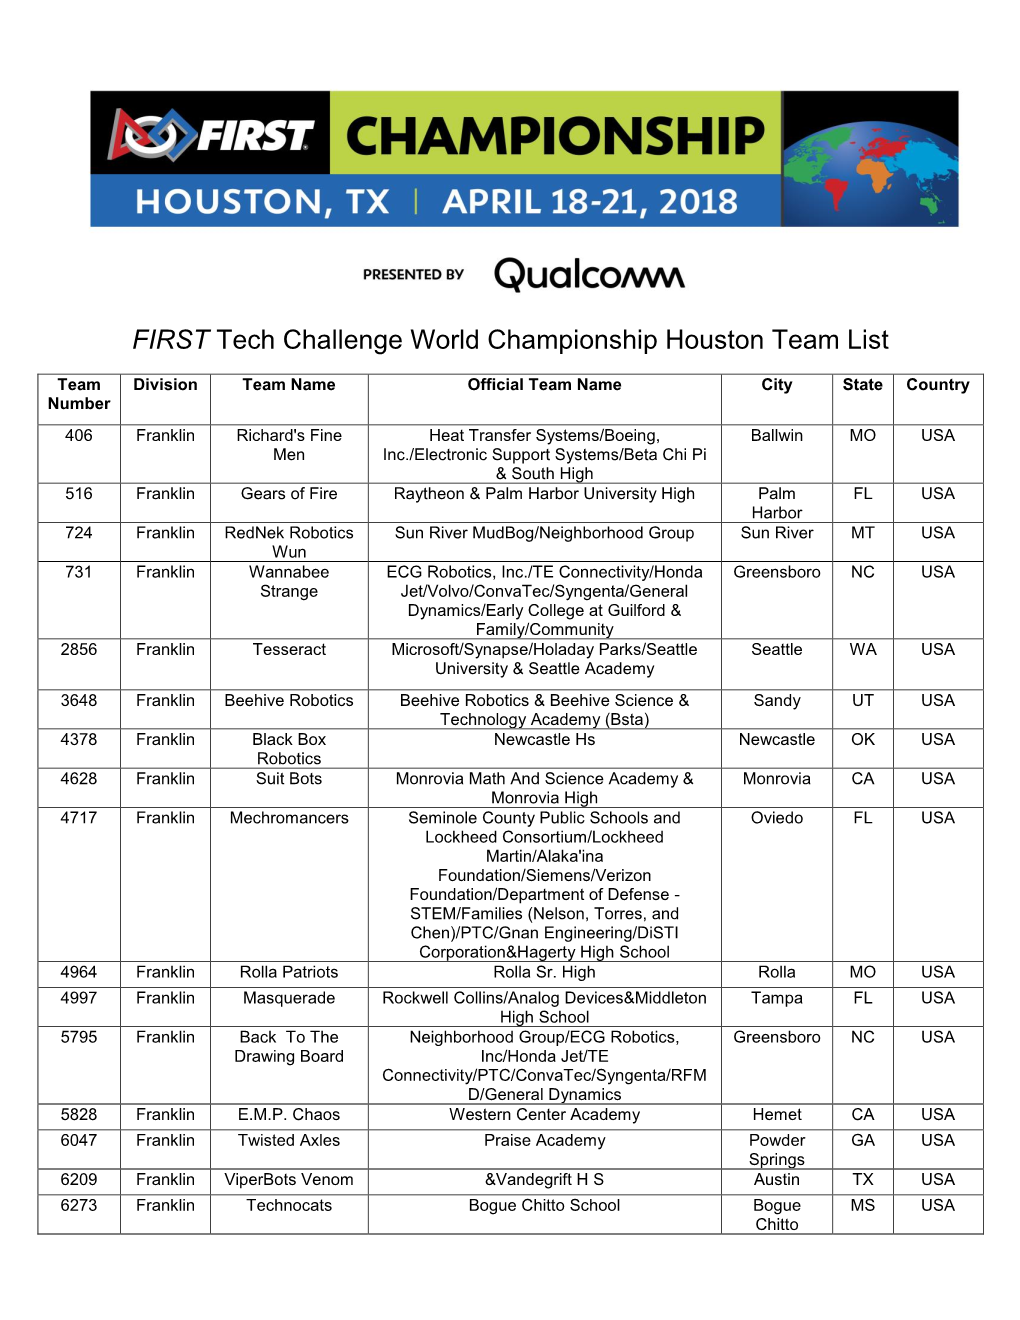 FIRST Tech Challenge World Championship Houston Team List